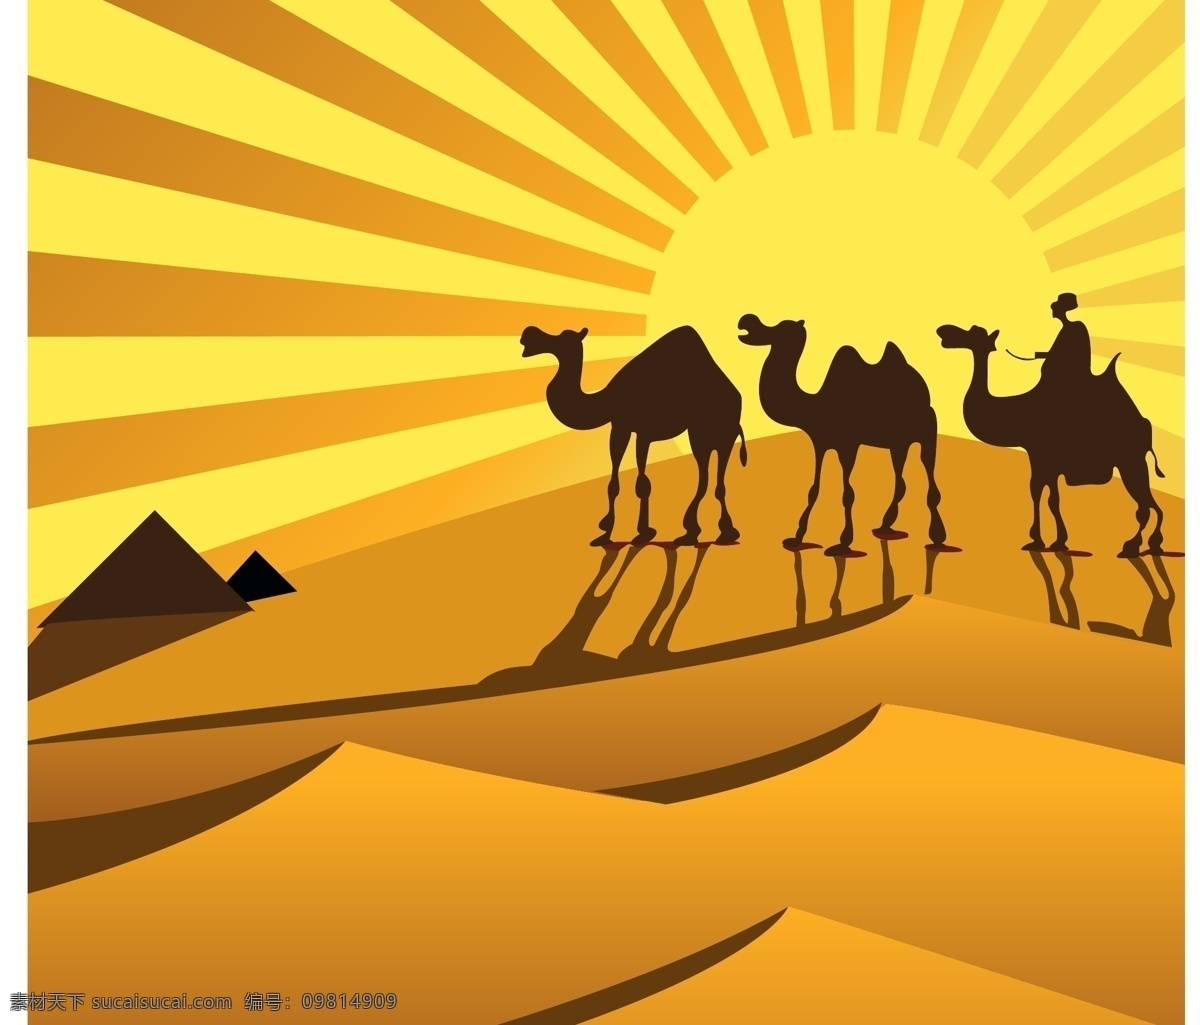 充满 异域风情 沙漠 风光 沙漠之舟 沙漠旅游 绿洲 沙漠游玩 玩转沙漠 保护野生动物 保护骆驼 沙漠自驾游 沙丘 景色 荒漠 沙地 骆驼 骆驼队 驼队 骆驼图片 骆驼素材 骆驼psd 骆驼沙漠 平面素材 黄色